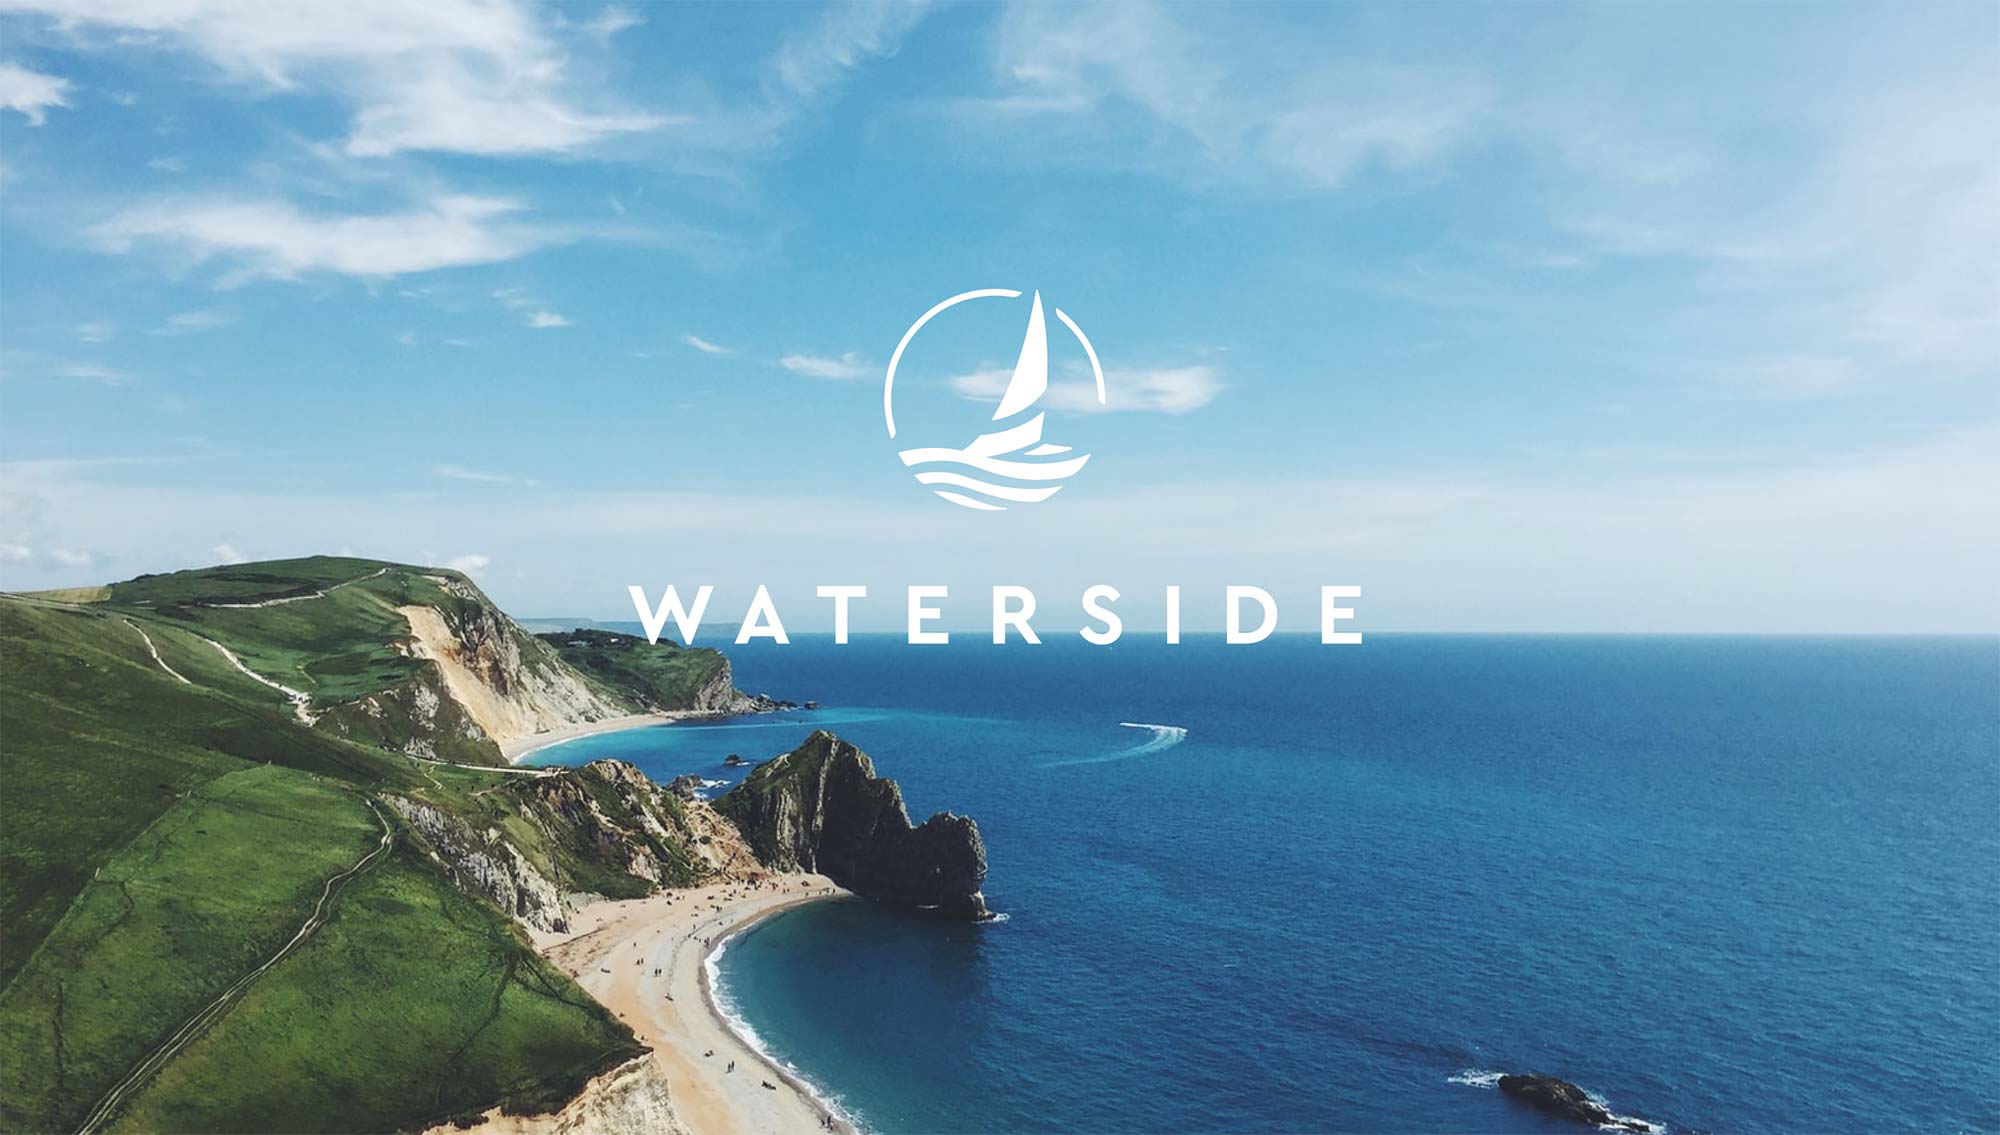 waterside logo on coastal image